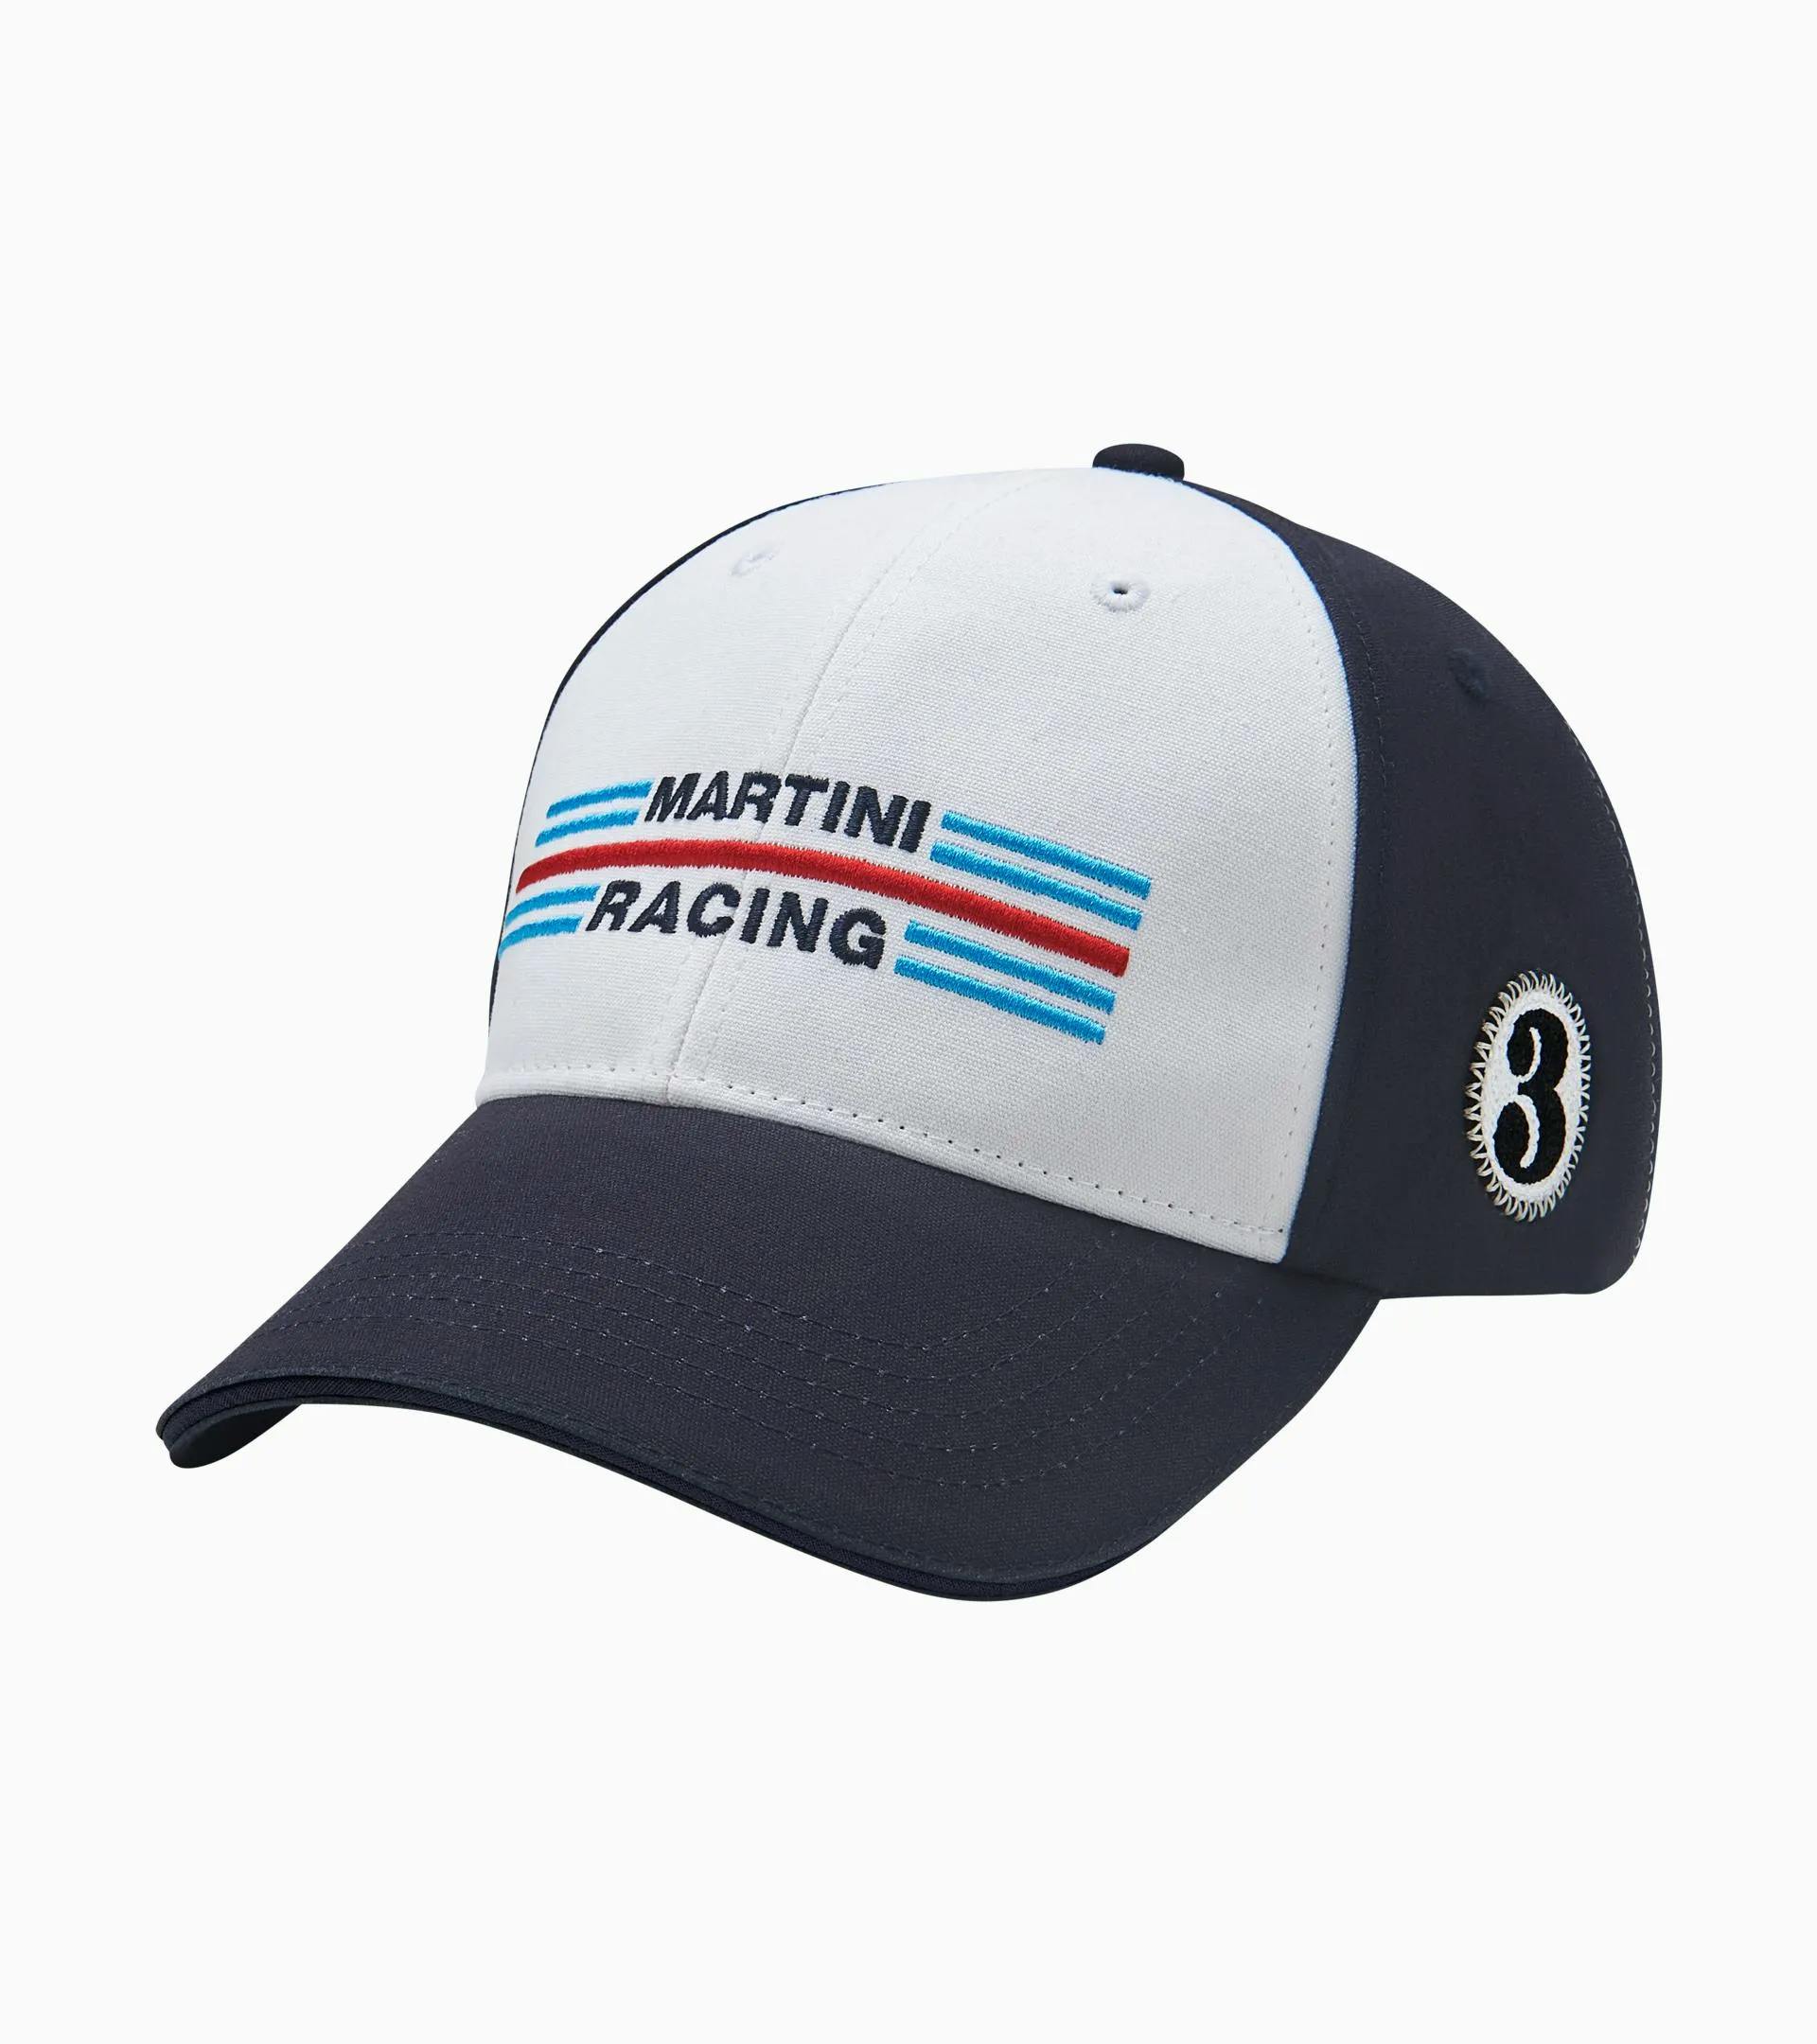 Casquette PORSCHE Martini Racing de la Collection Officielle Porsche